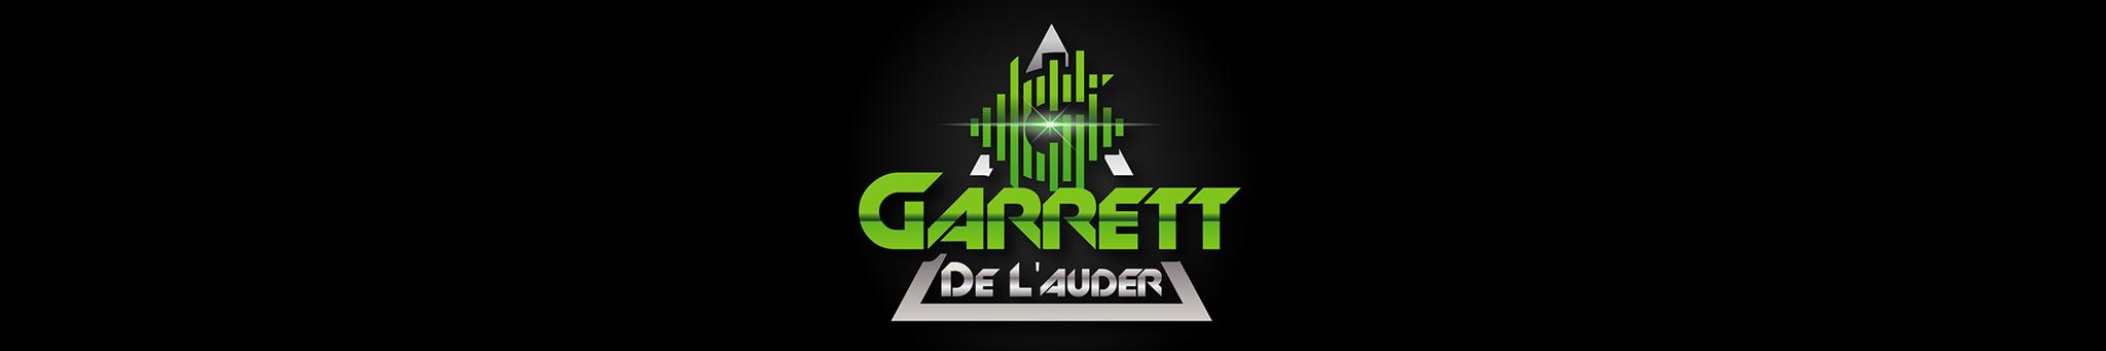 Garrett De L'auder